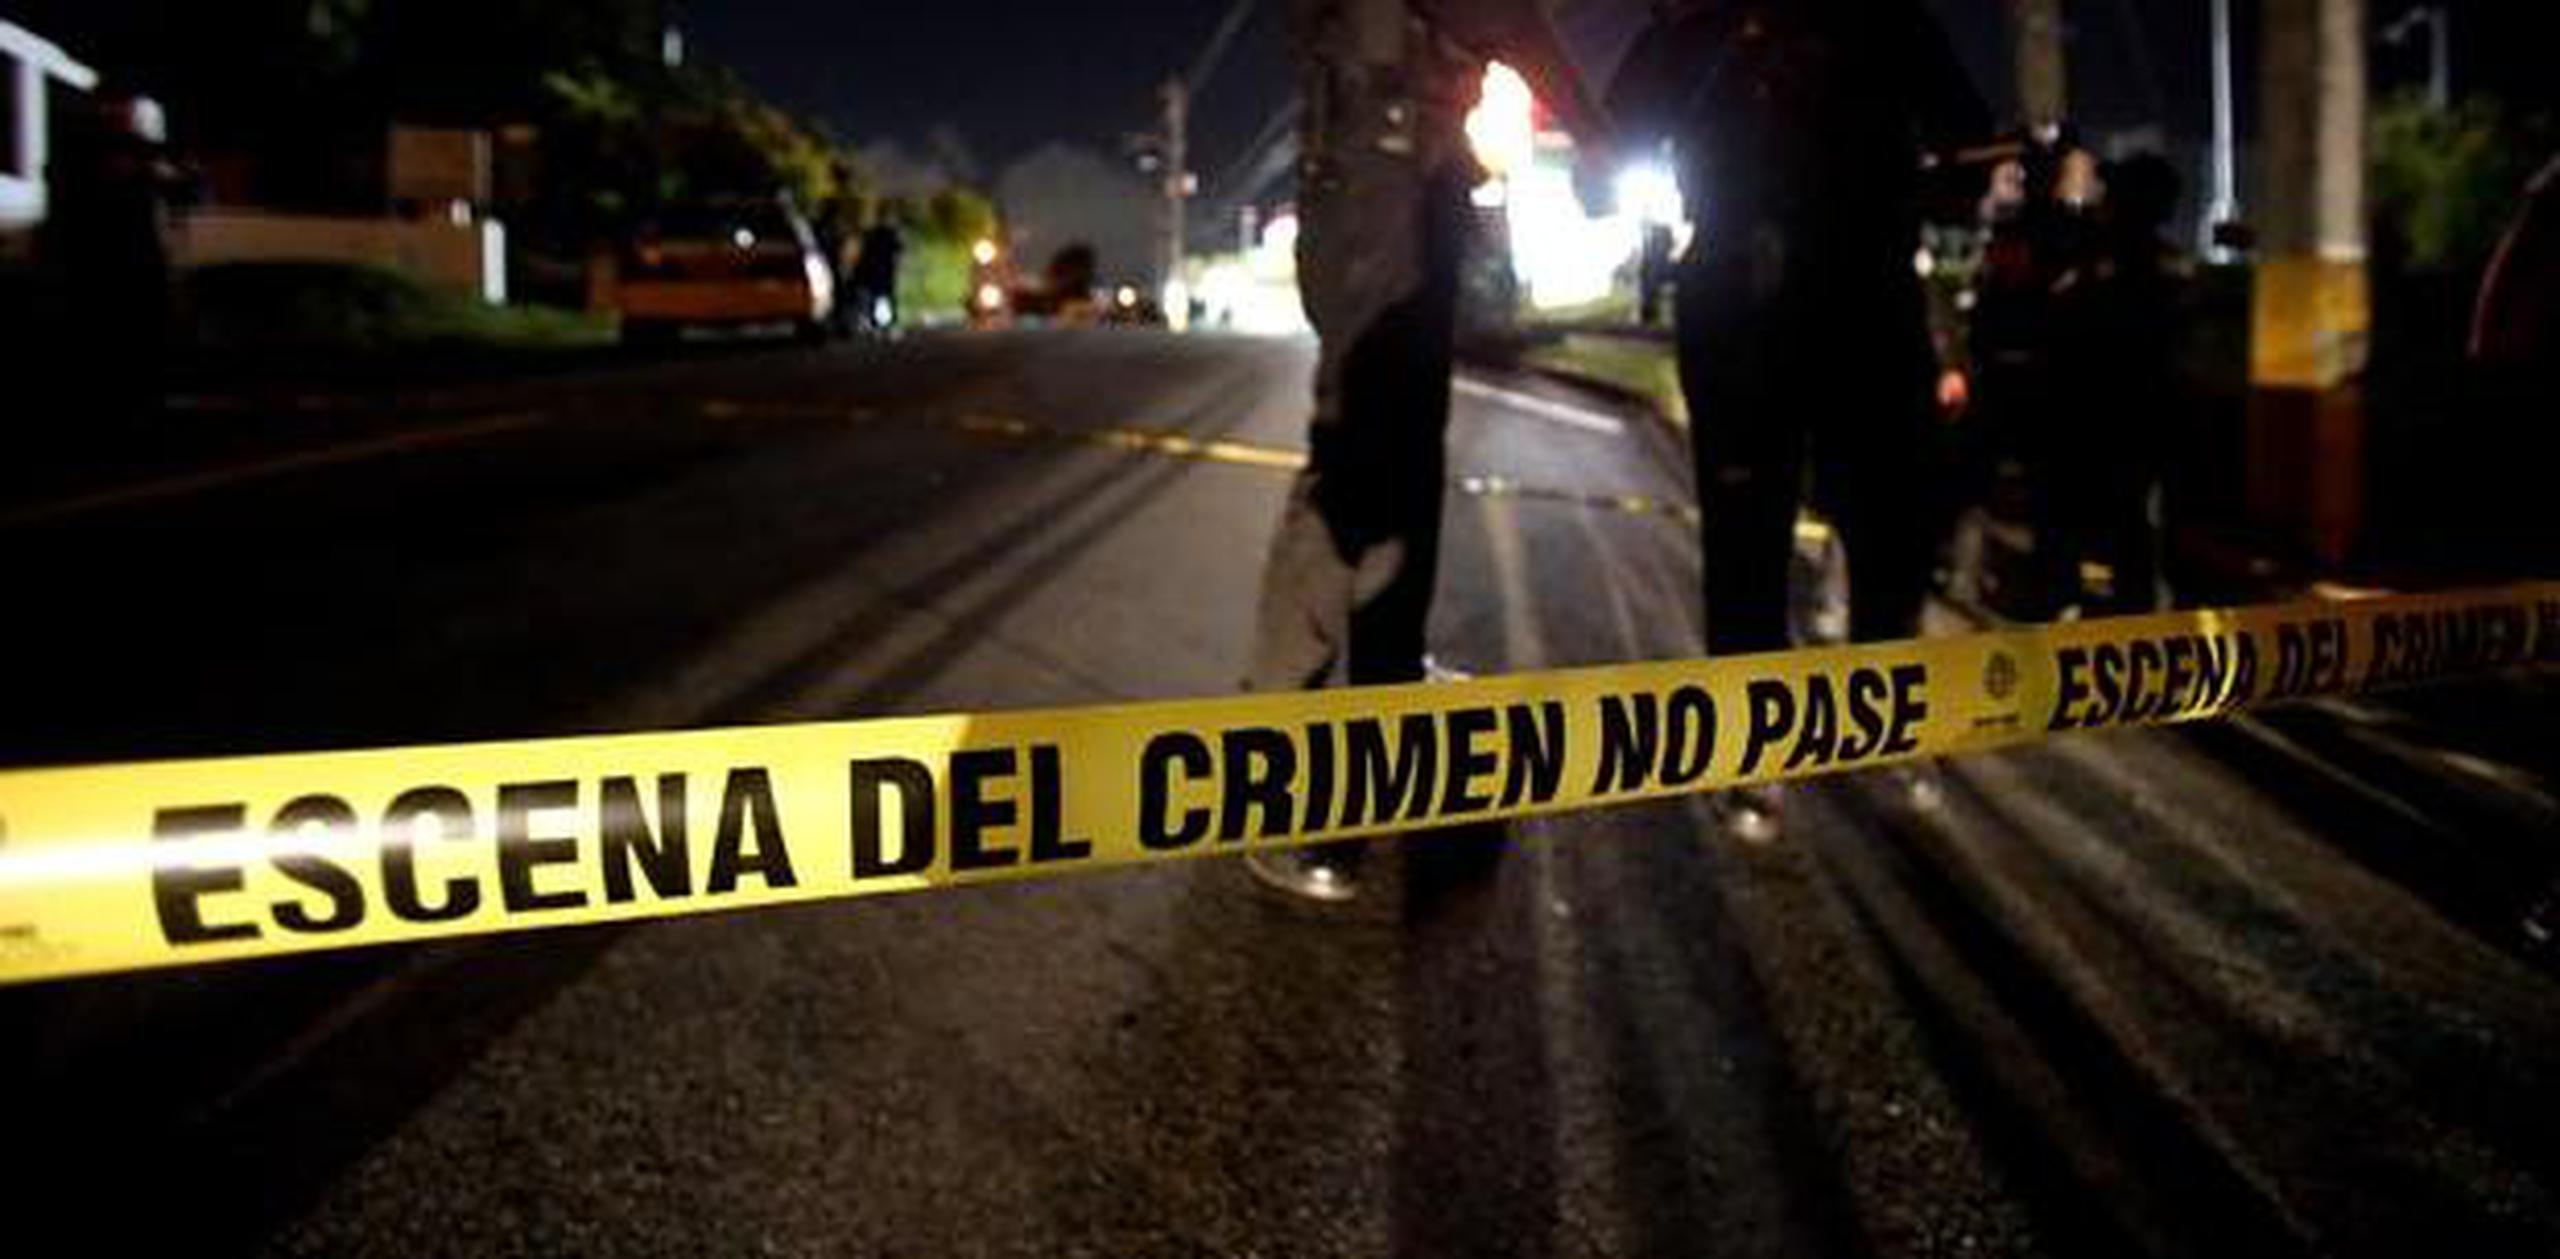 Agentes adscritos a la División de Homicidios del Cuerpo de Investigación Criminal de San Juan investigan los hechos.